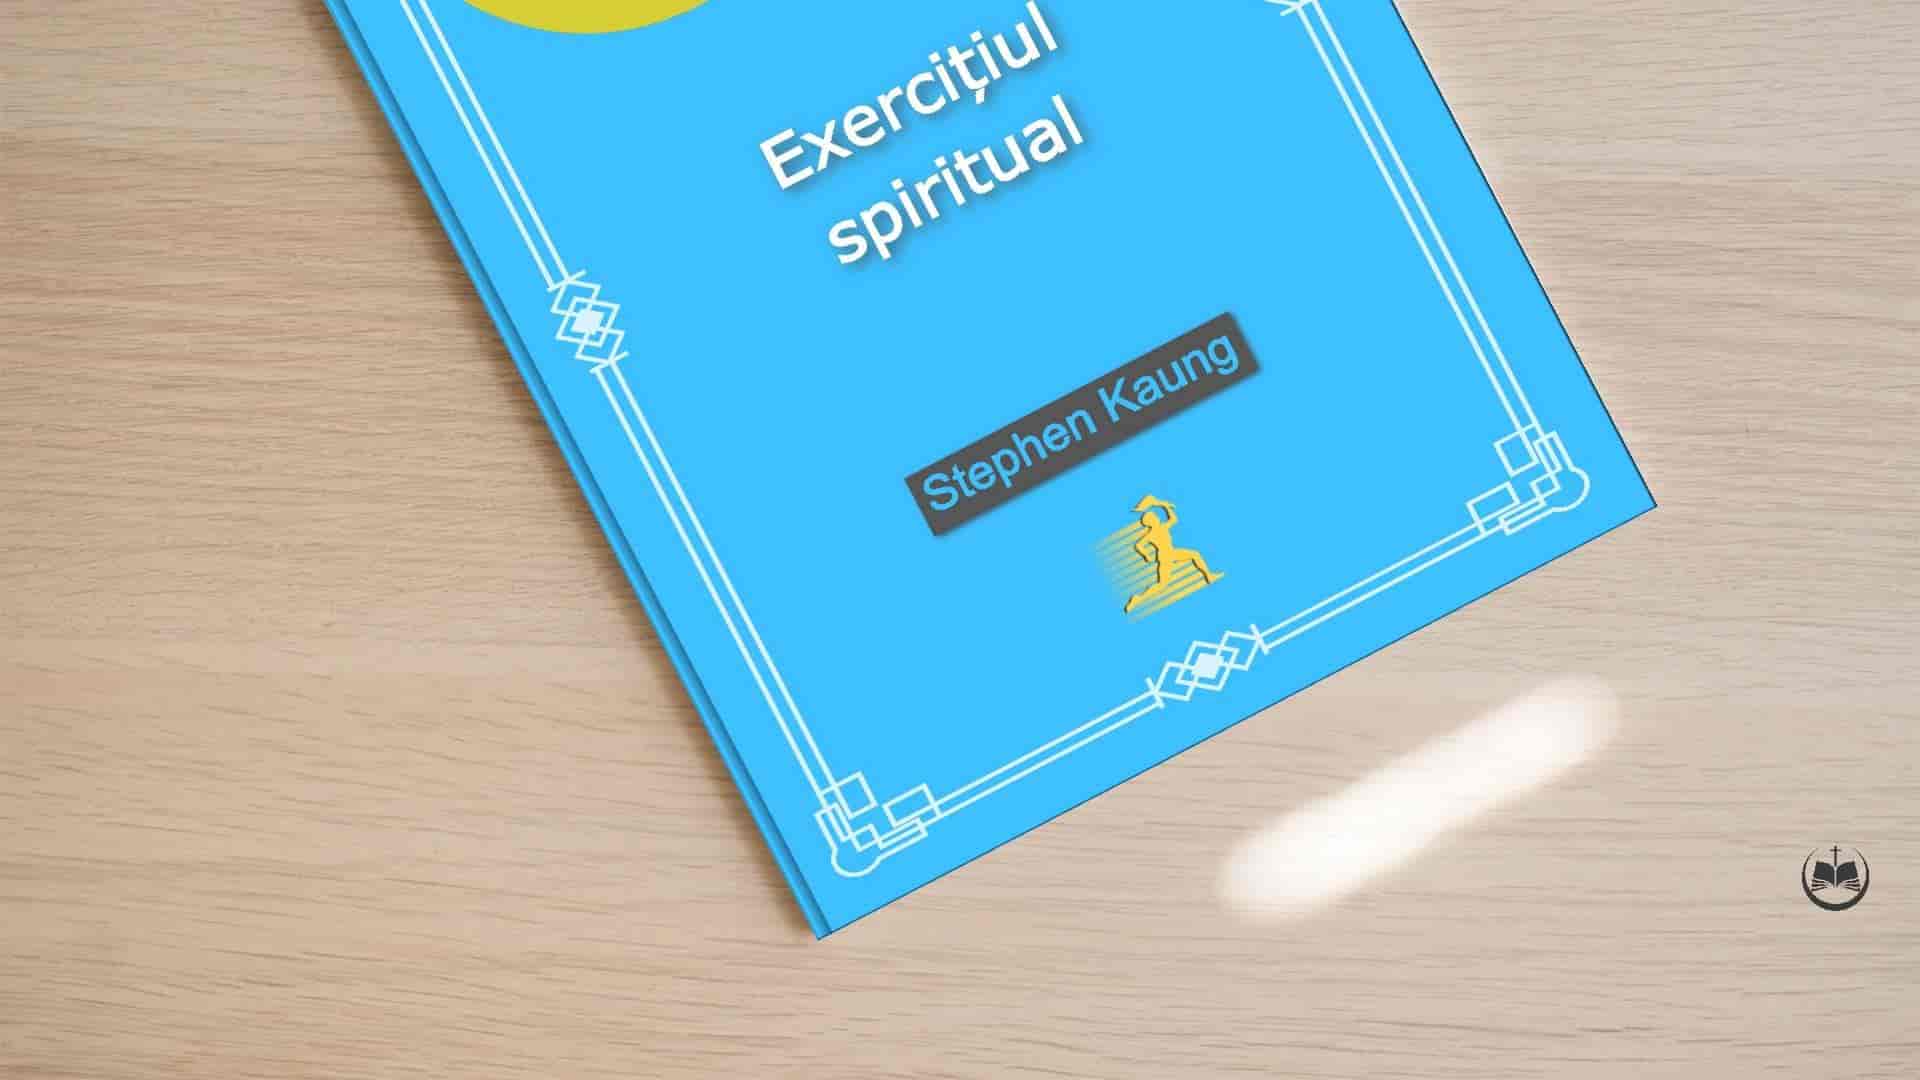 Exerciţiul spiritual - Biblioteca Creștină